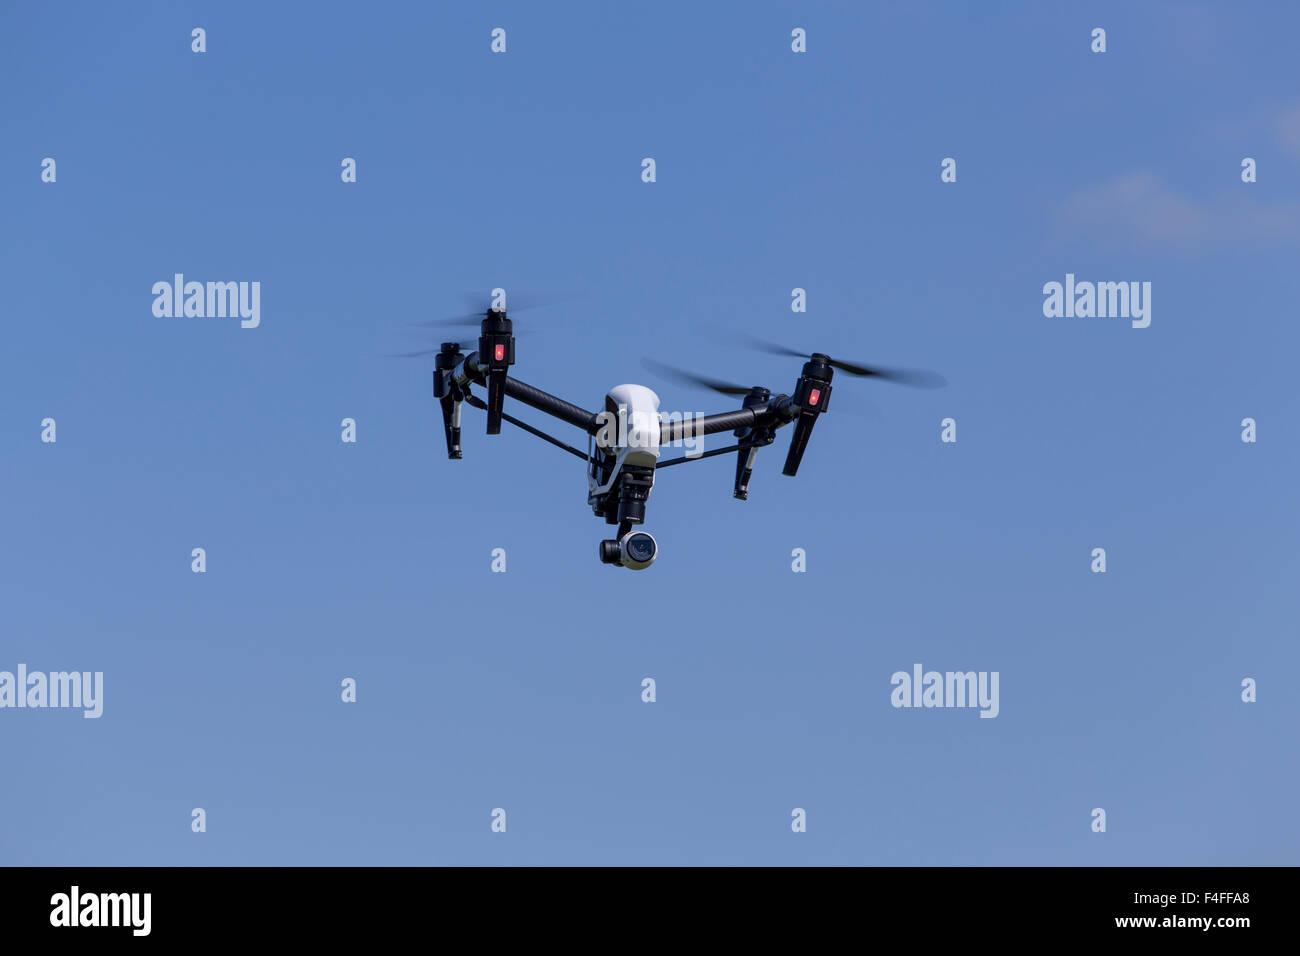 Drone Quadcopter DJI Inspirer1 avec l'appareil photo pour la photographie aérienne, des photos et vidéos de ciel bleu. Banque D'Images